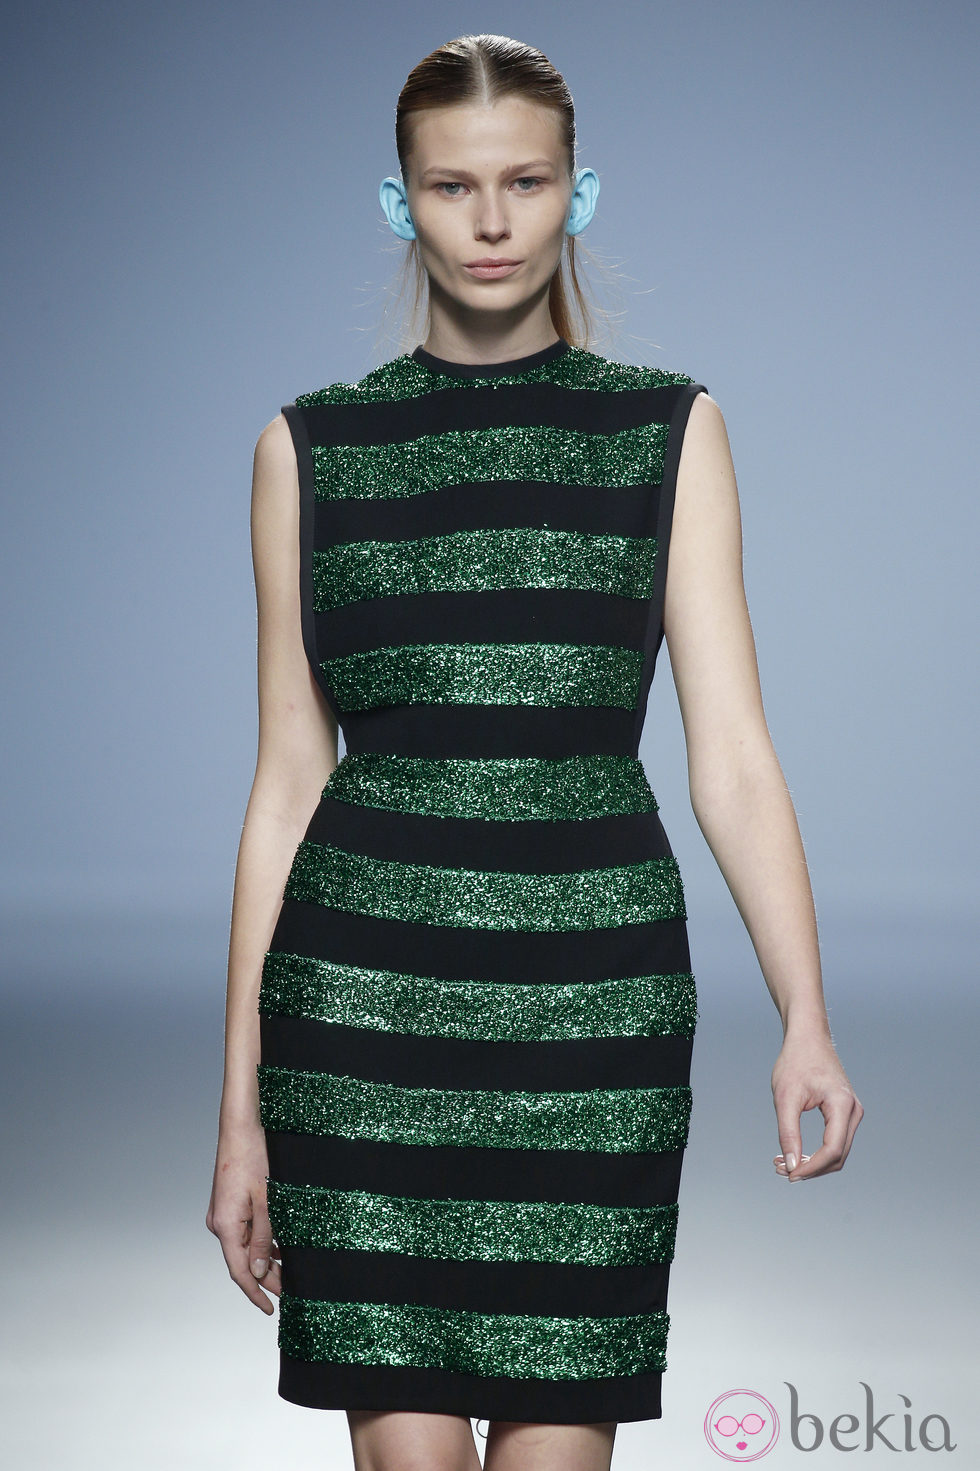 Vestido rayas verdes y negras de Davidelfin en Madrid Fashion Week primavera/verano 2015